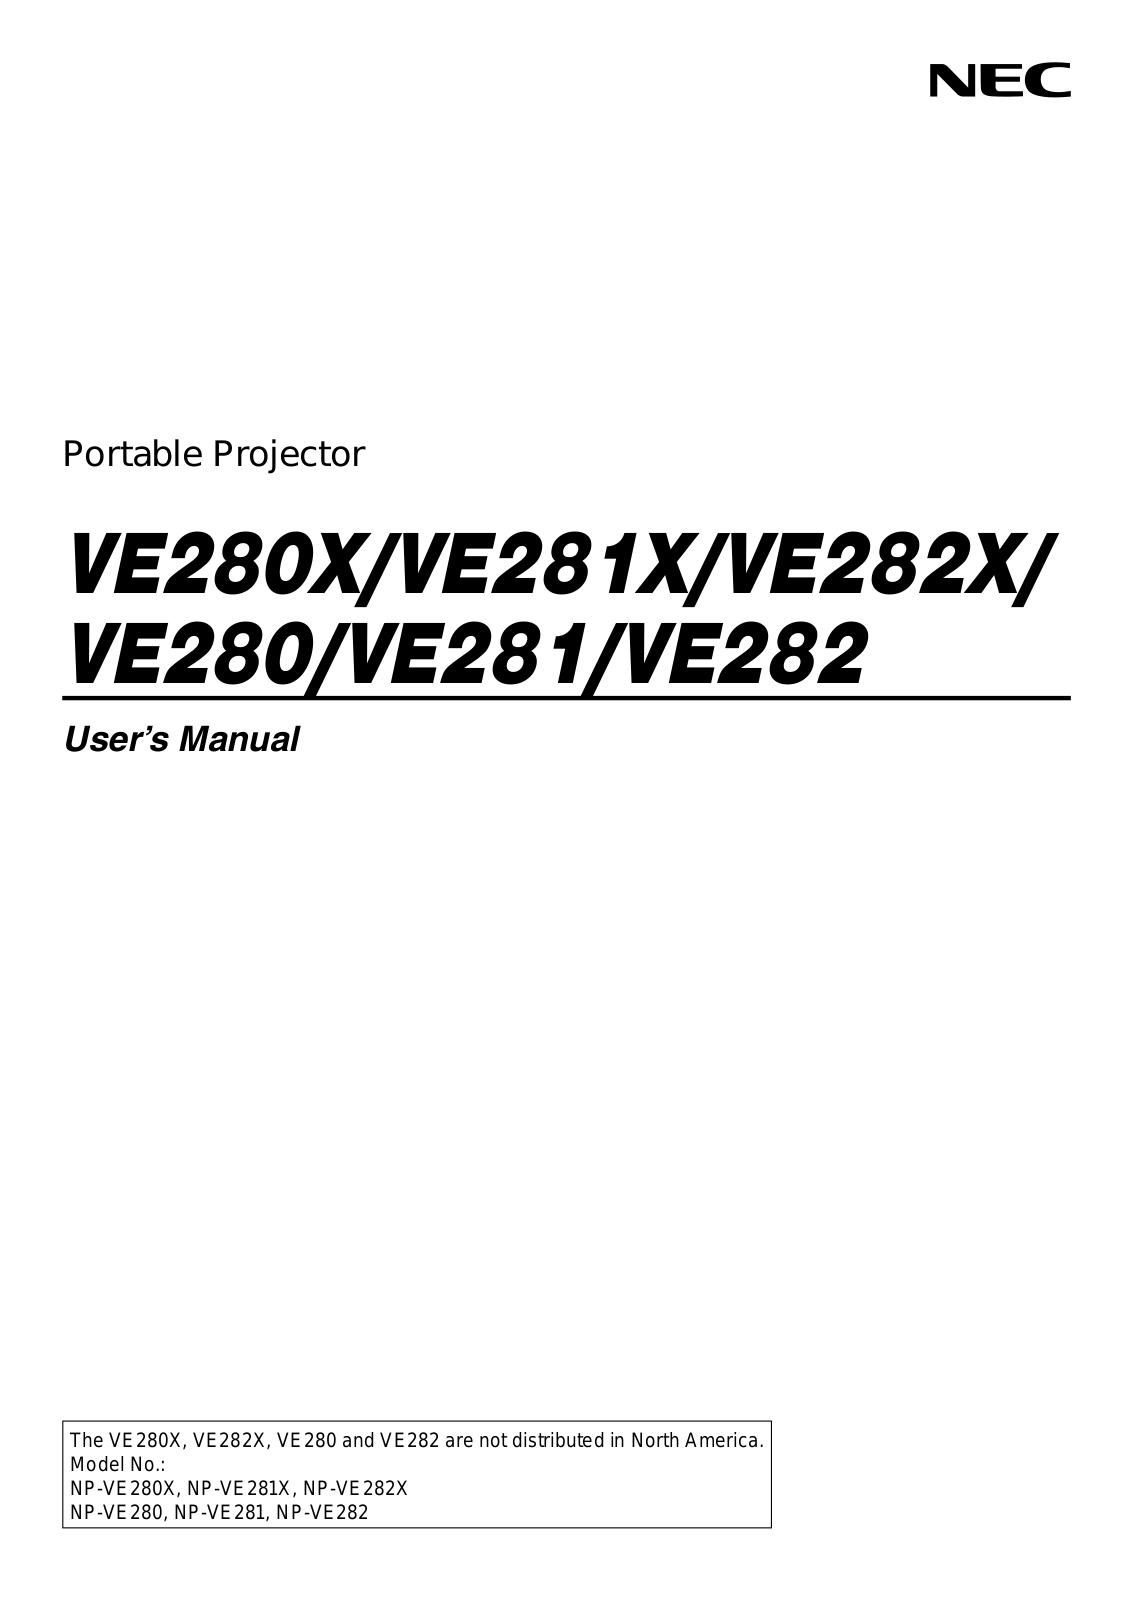 NEC NP-VE281X, NP-VE281, VE282X, VE281X, VE282 User Manual